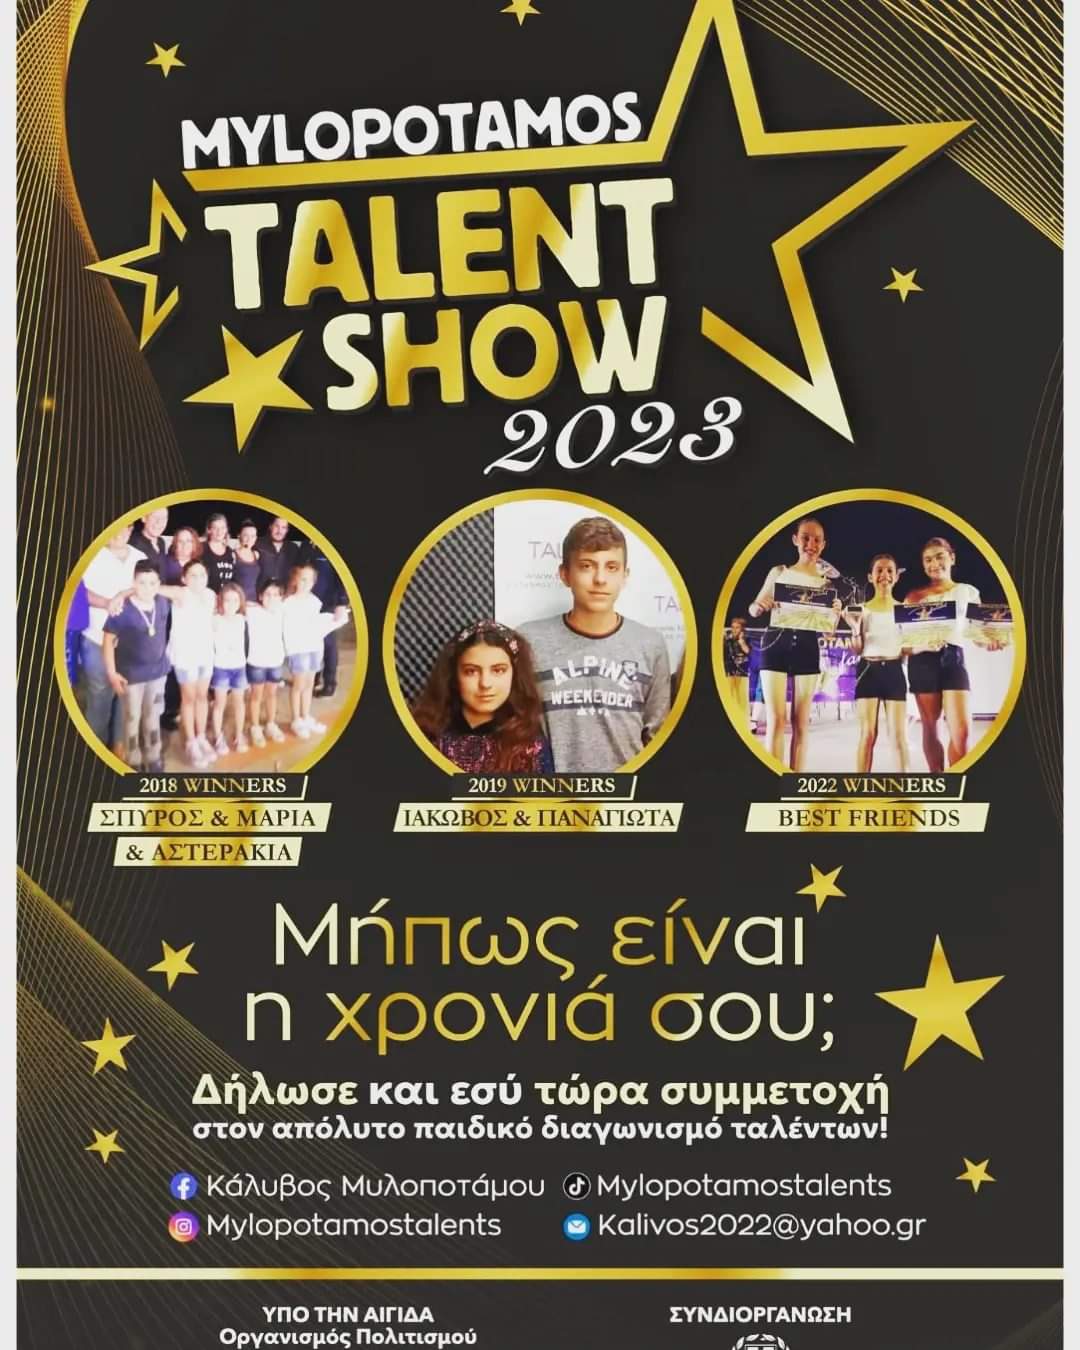 Mylopotamos talent show